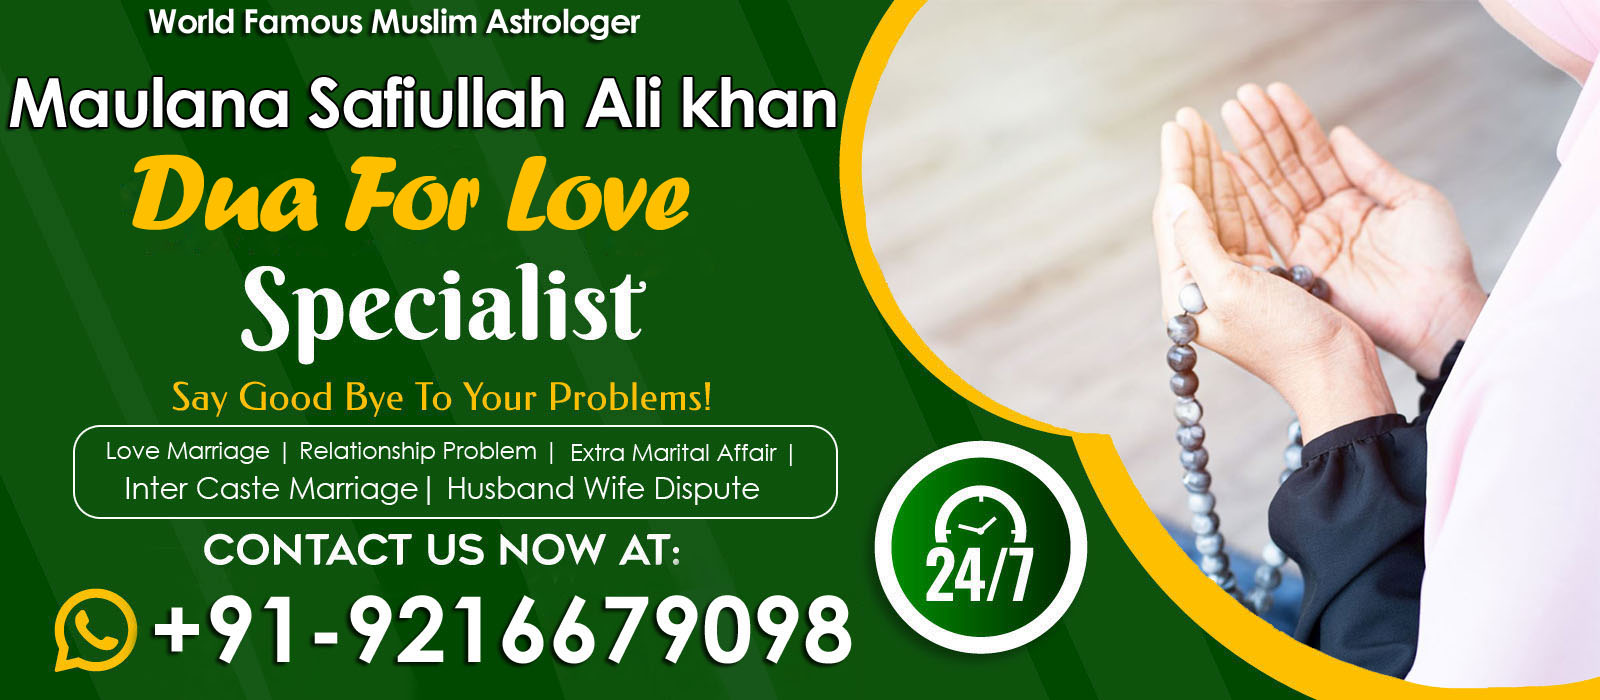 World Famous Maulana Safiullah Ali khan Ji +91-9216679098